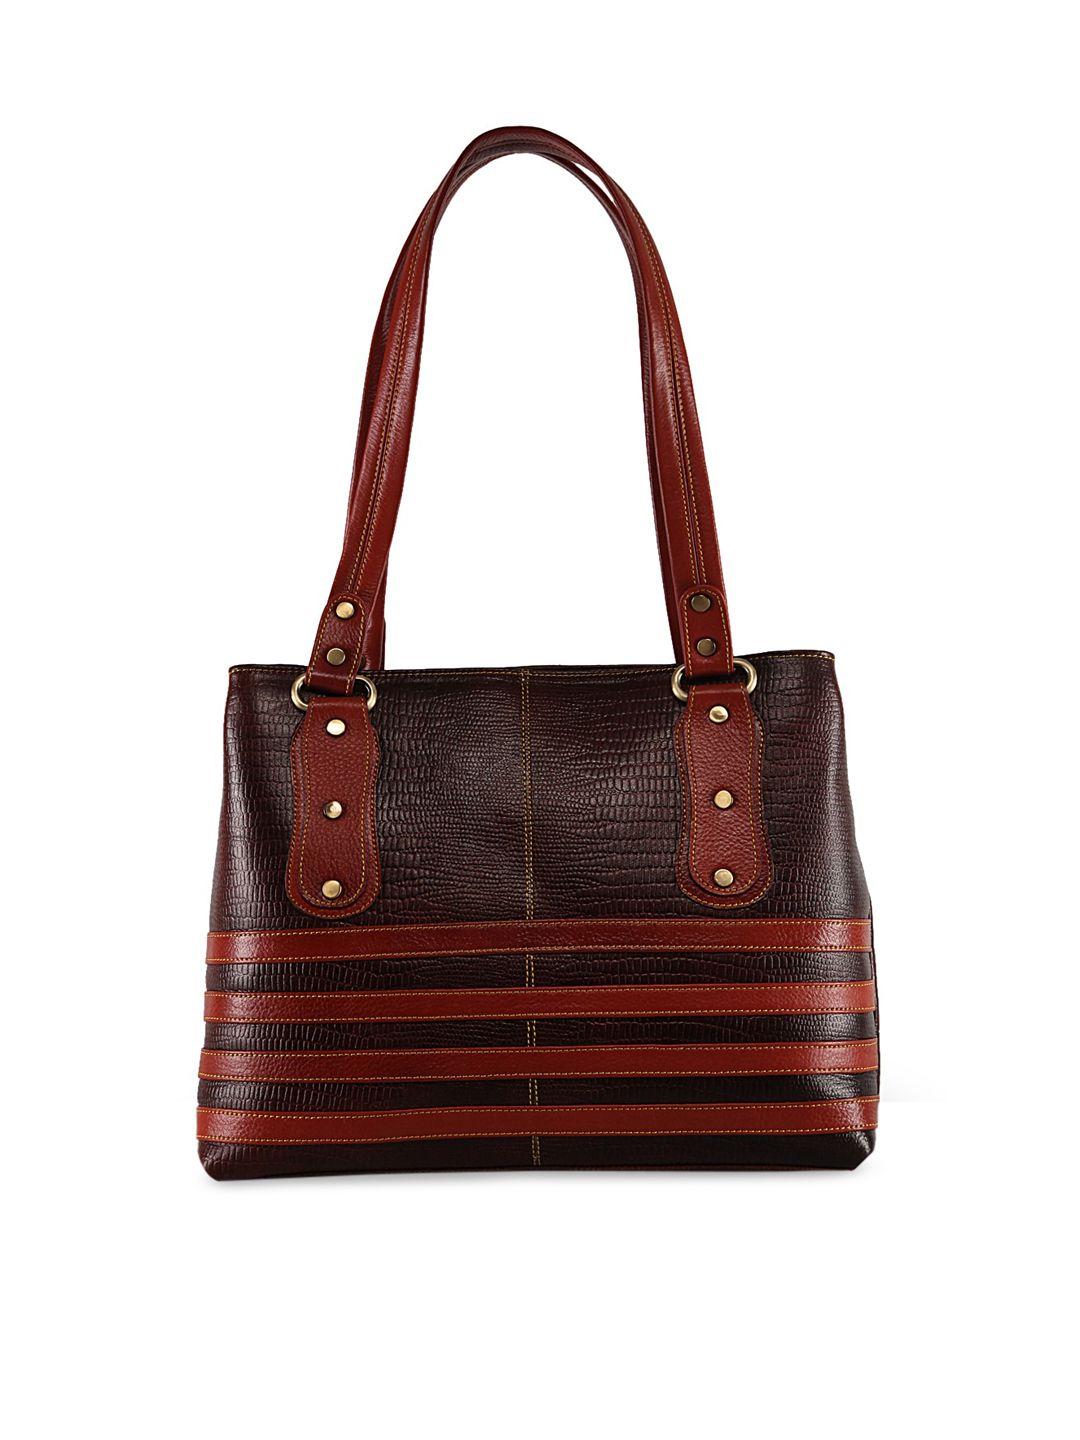 genwayne brown textured leather shopper shoulder bag